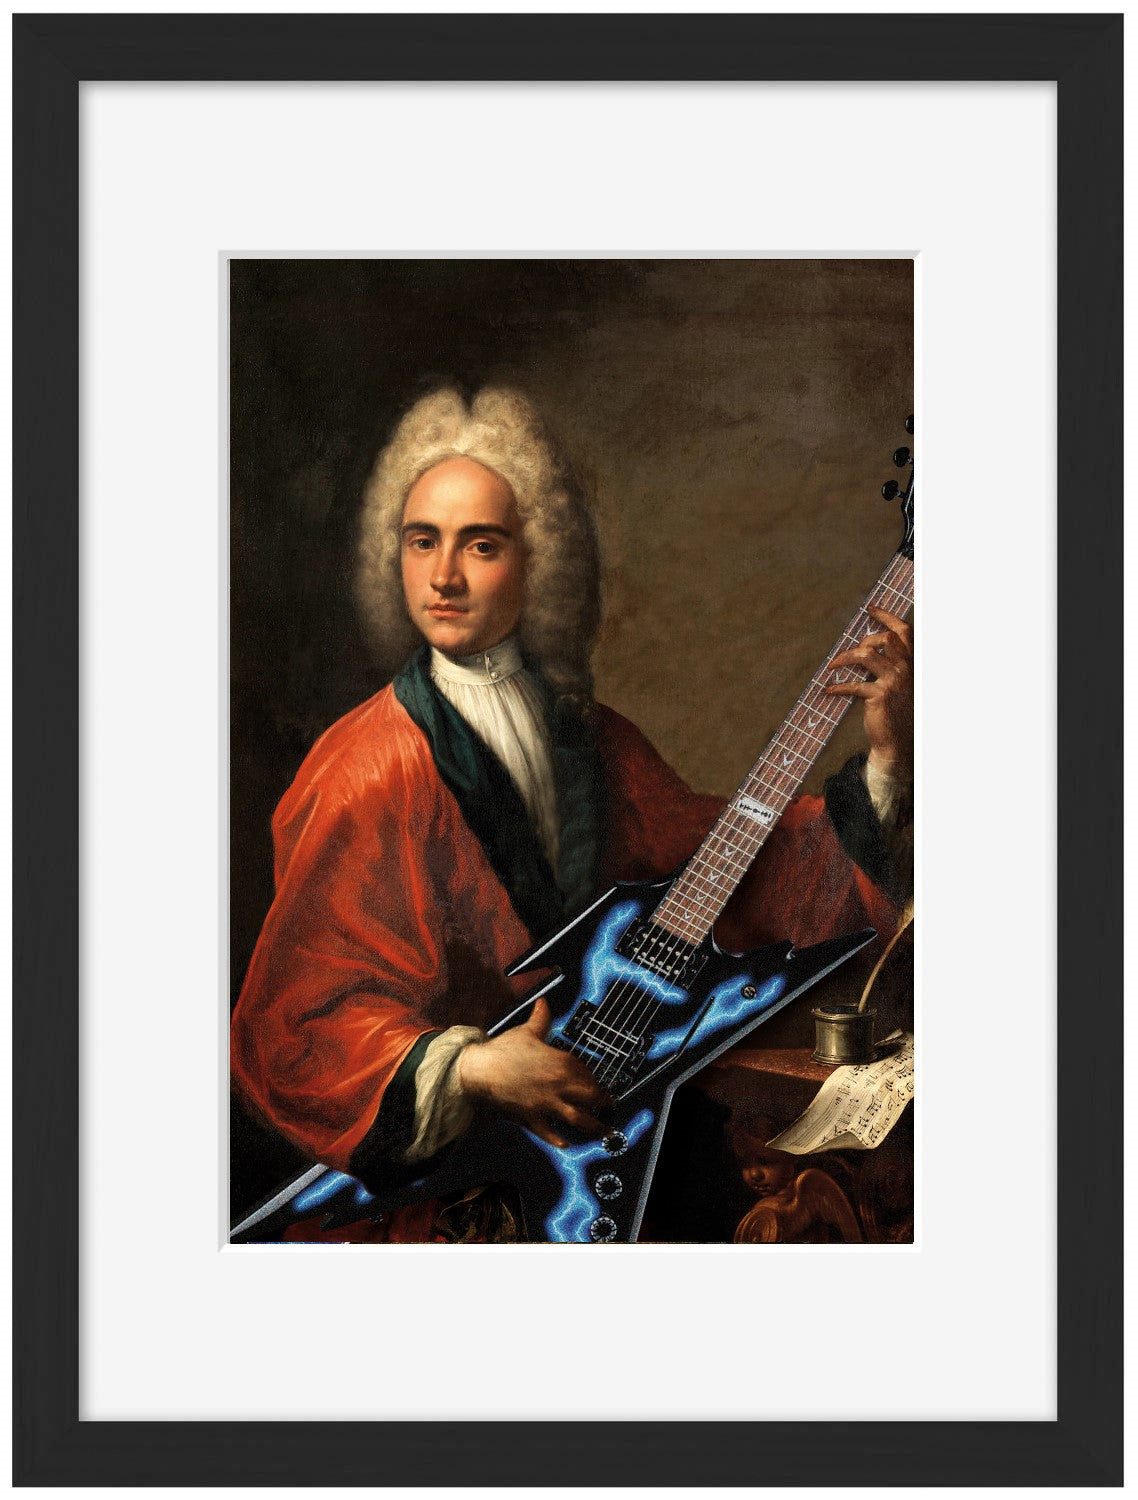 Guitare 5-historical, print-Framed Print-30 x 40 cm-BLUE SHAKER